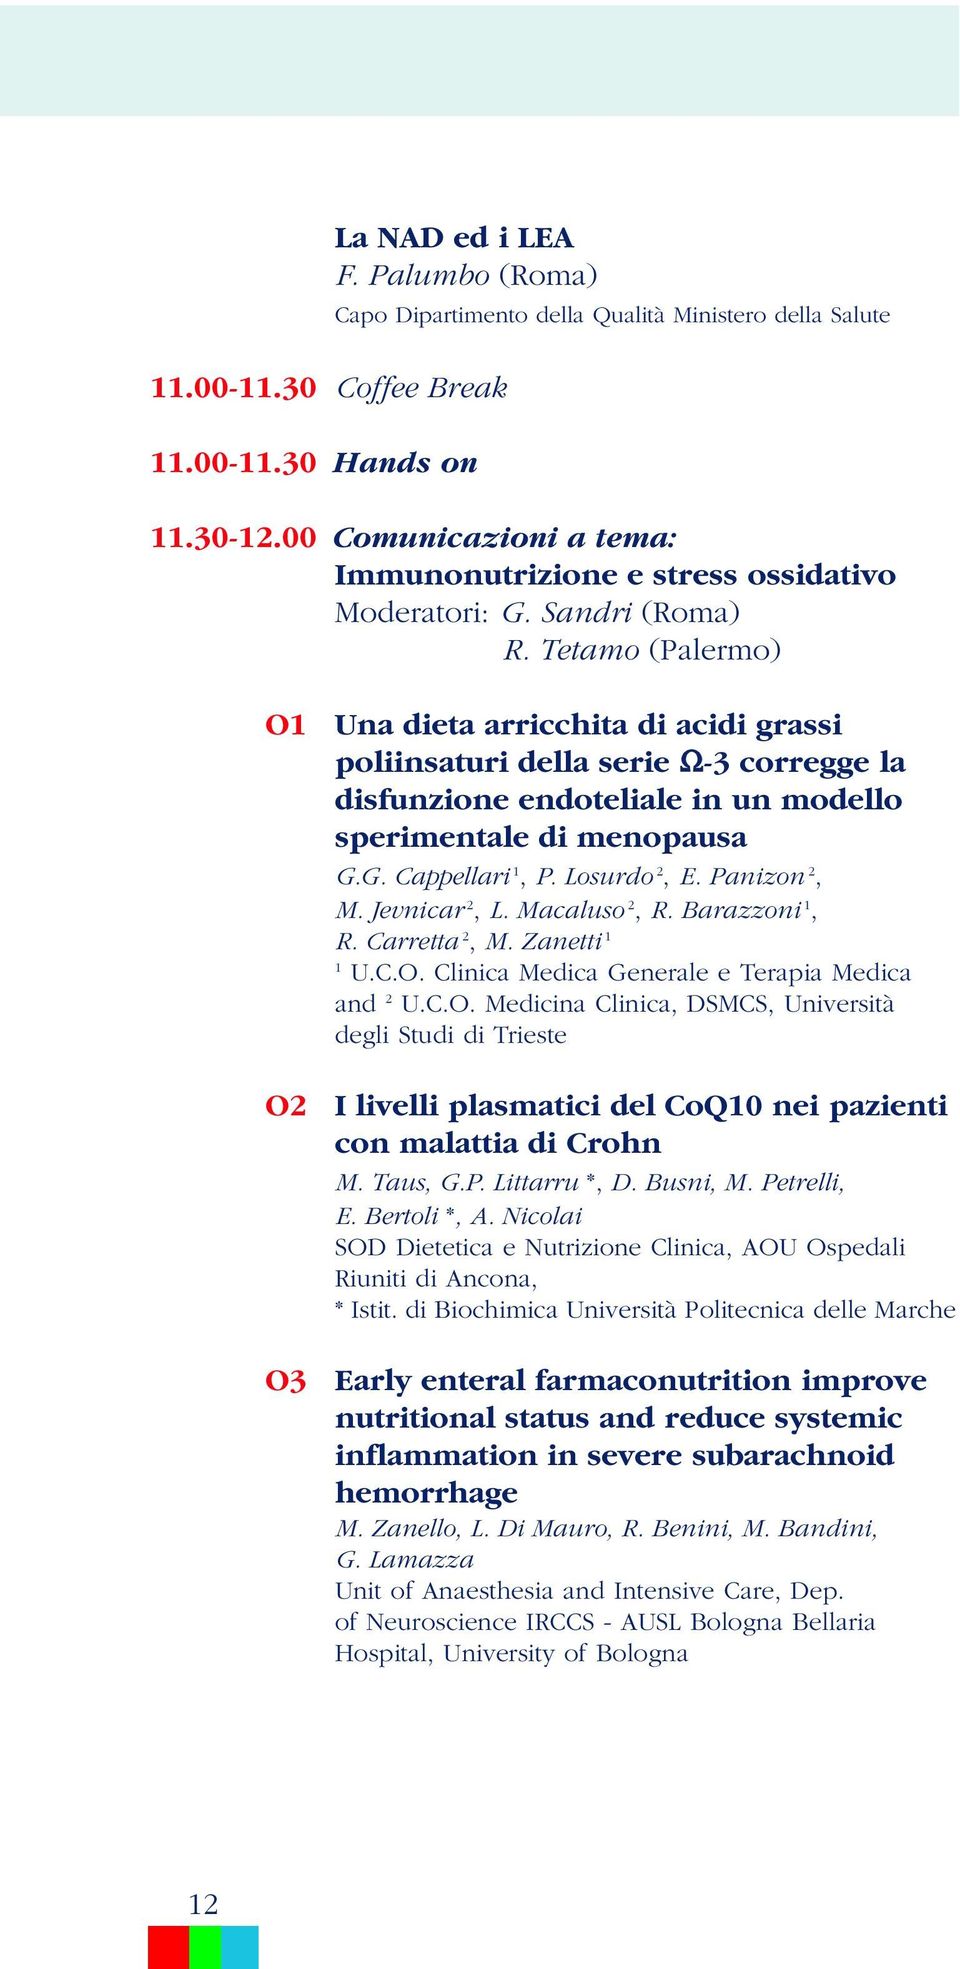 Tetamo (Palermo) O1 O2 O3 Una dieta arricchita di acidi grassi poliinsaturi della serie Ω-3 corregge la disfunzione endoteliale in un modello sperimentale di menopausa G.G. Cappellari 1, P.